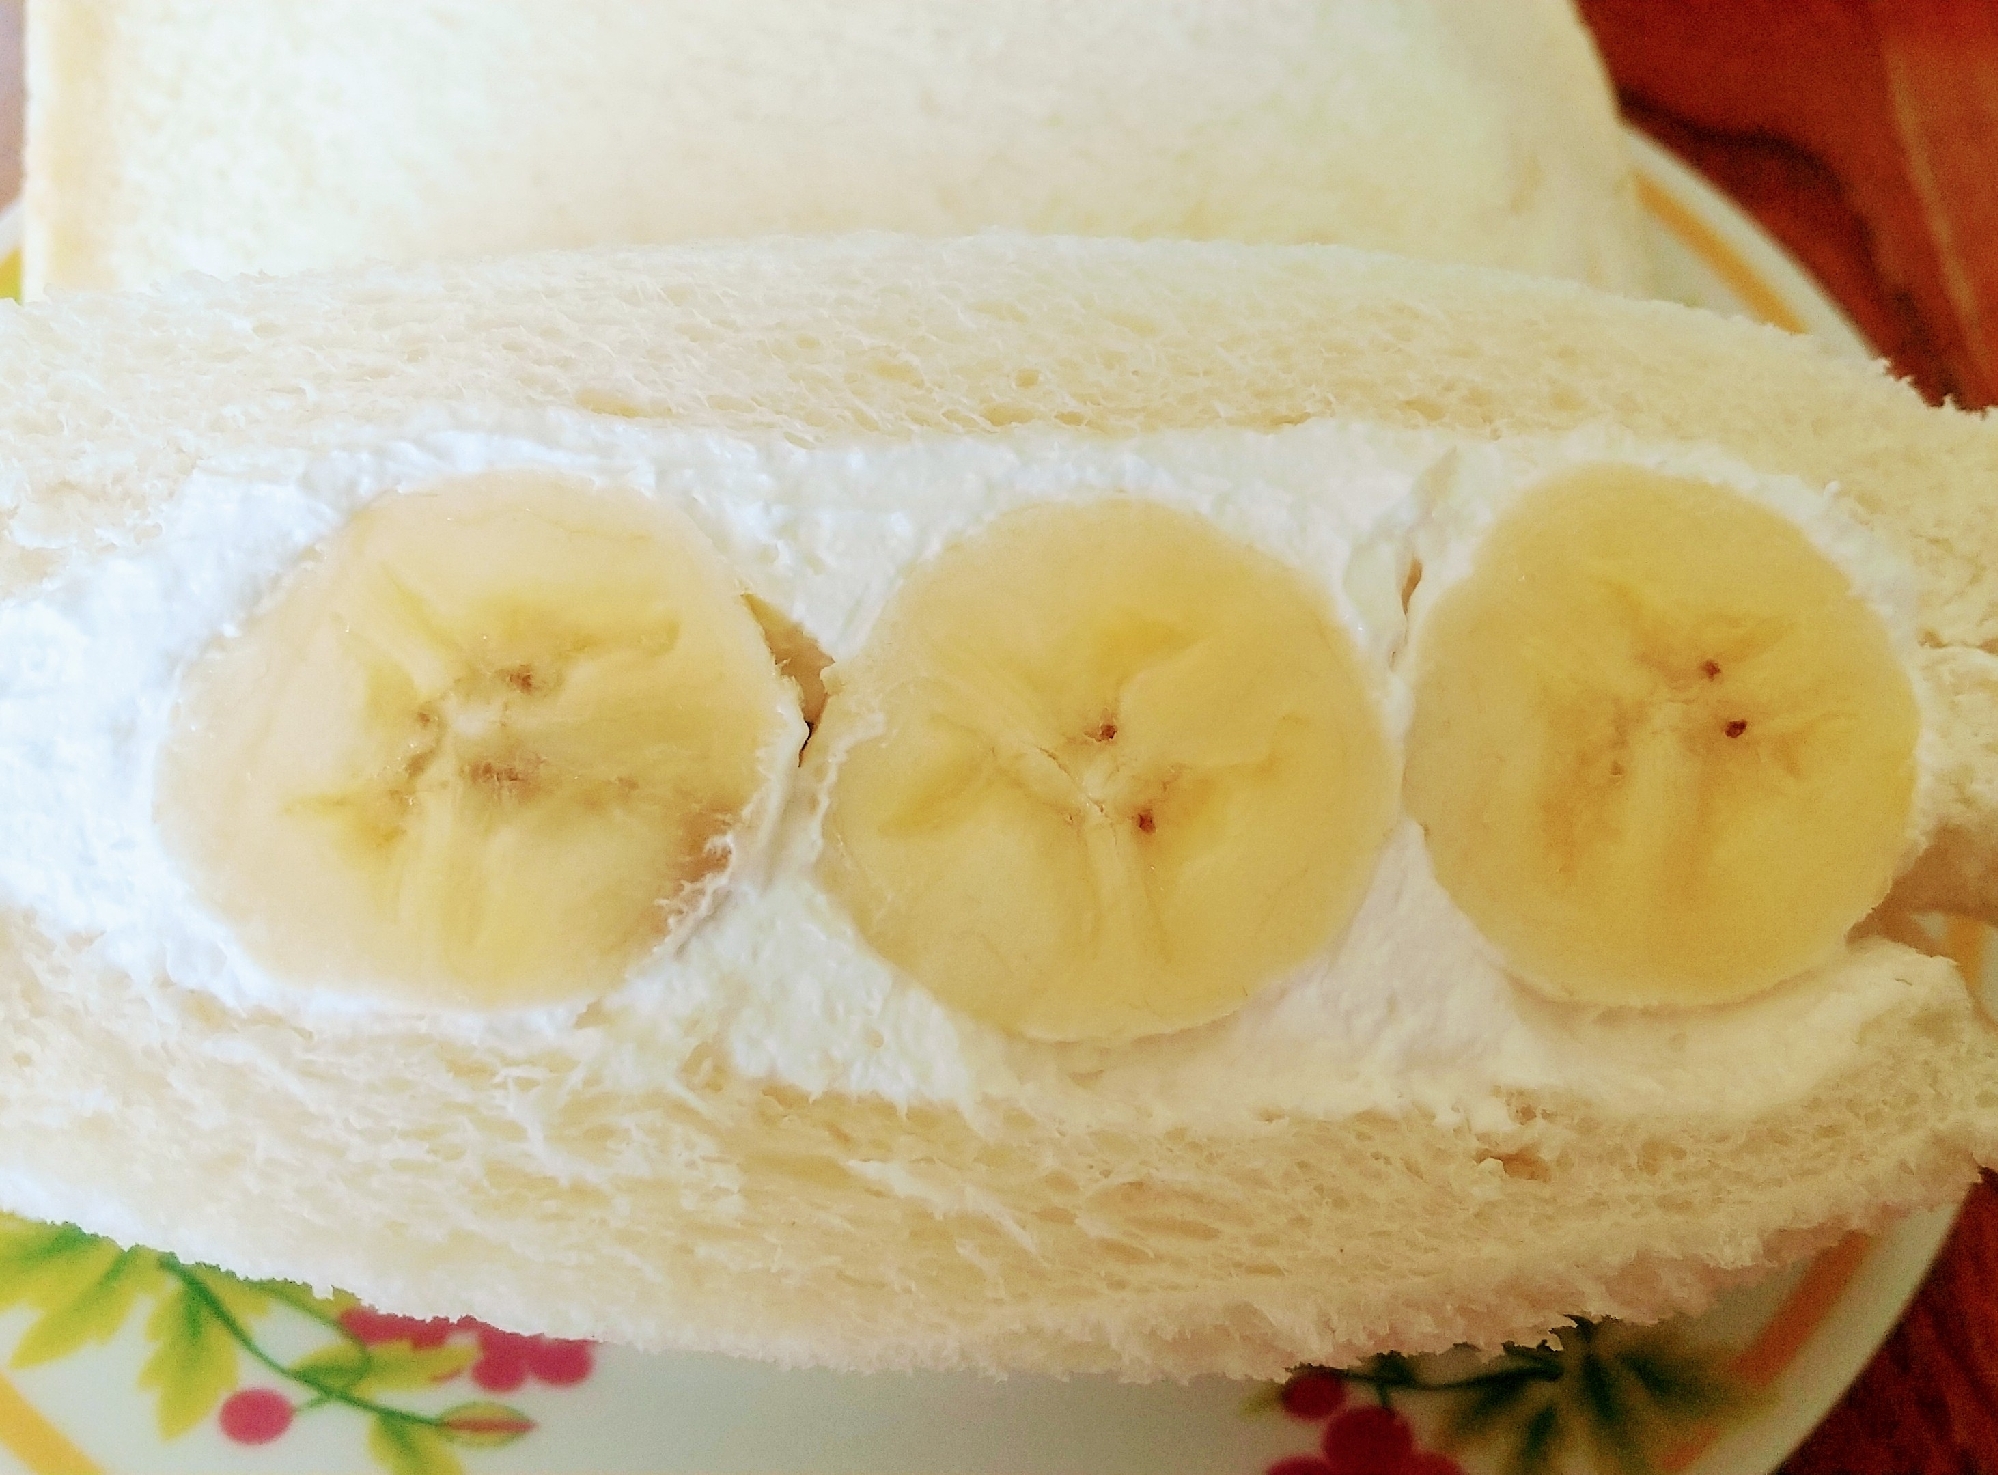 完熟バナナde簡単フルーツサンド